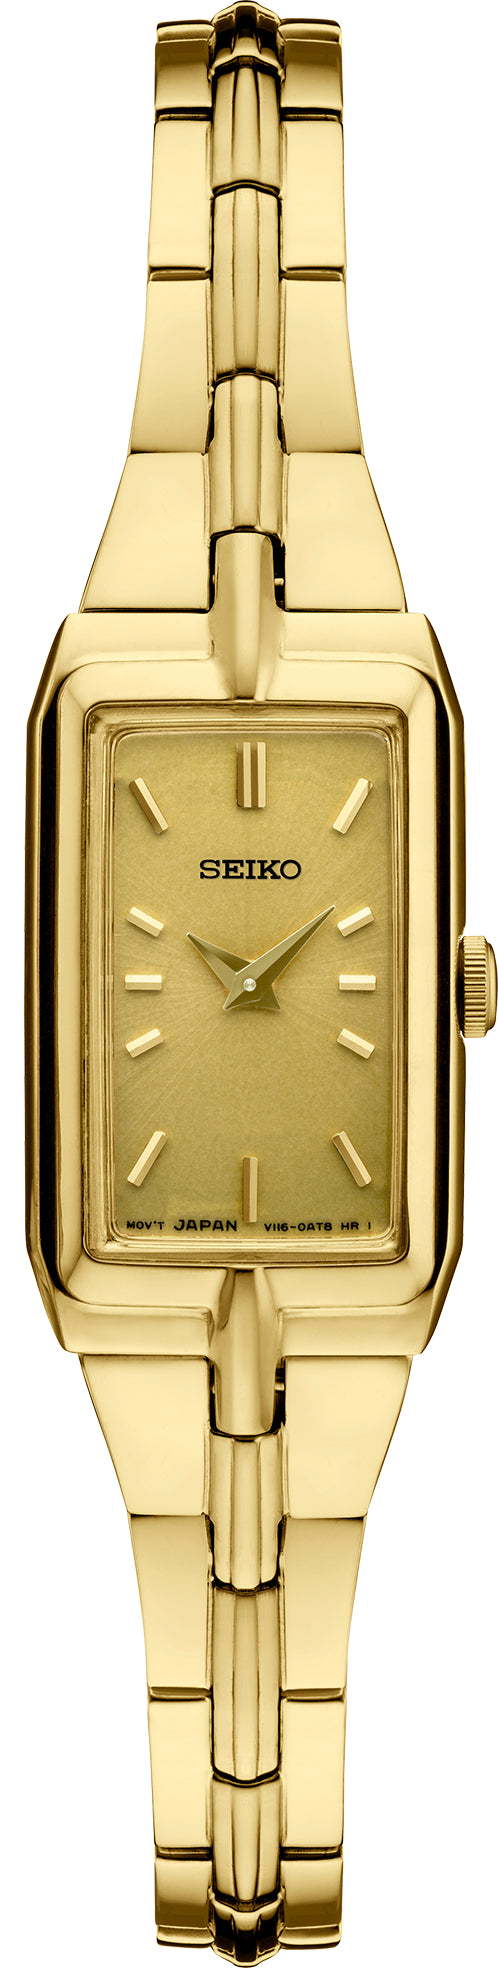 Ladies Seiko Yellow Tone Watch